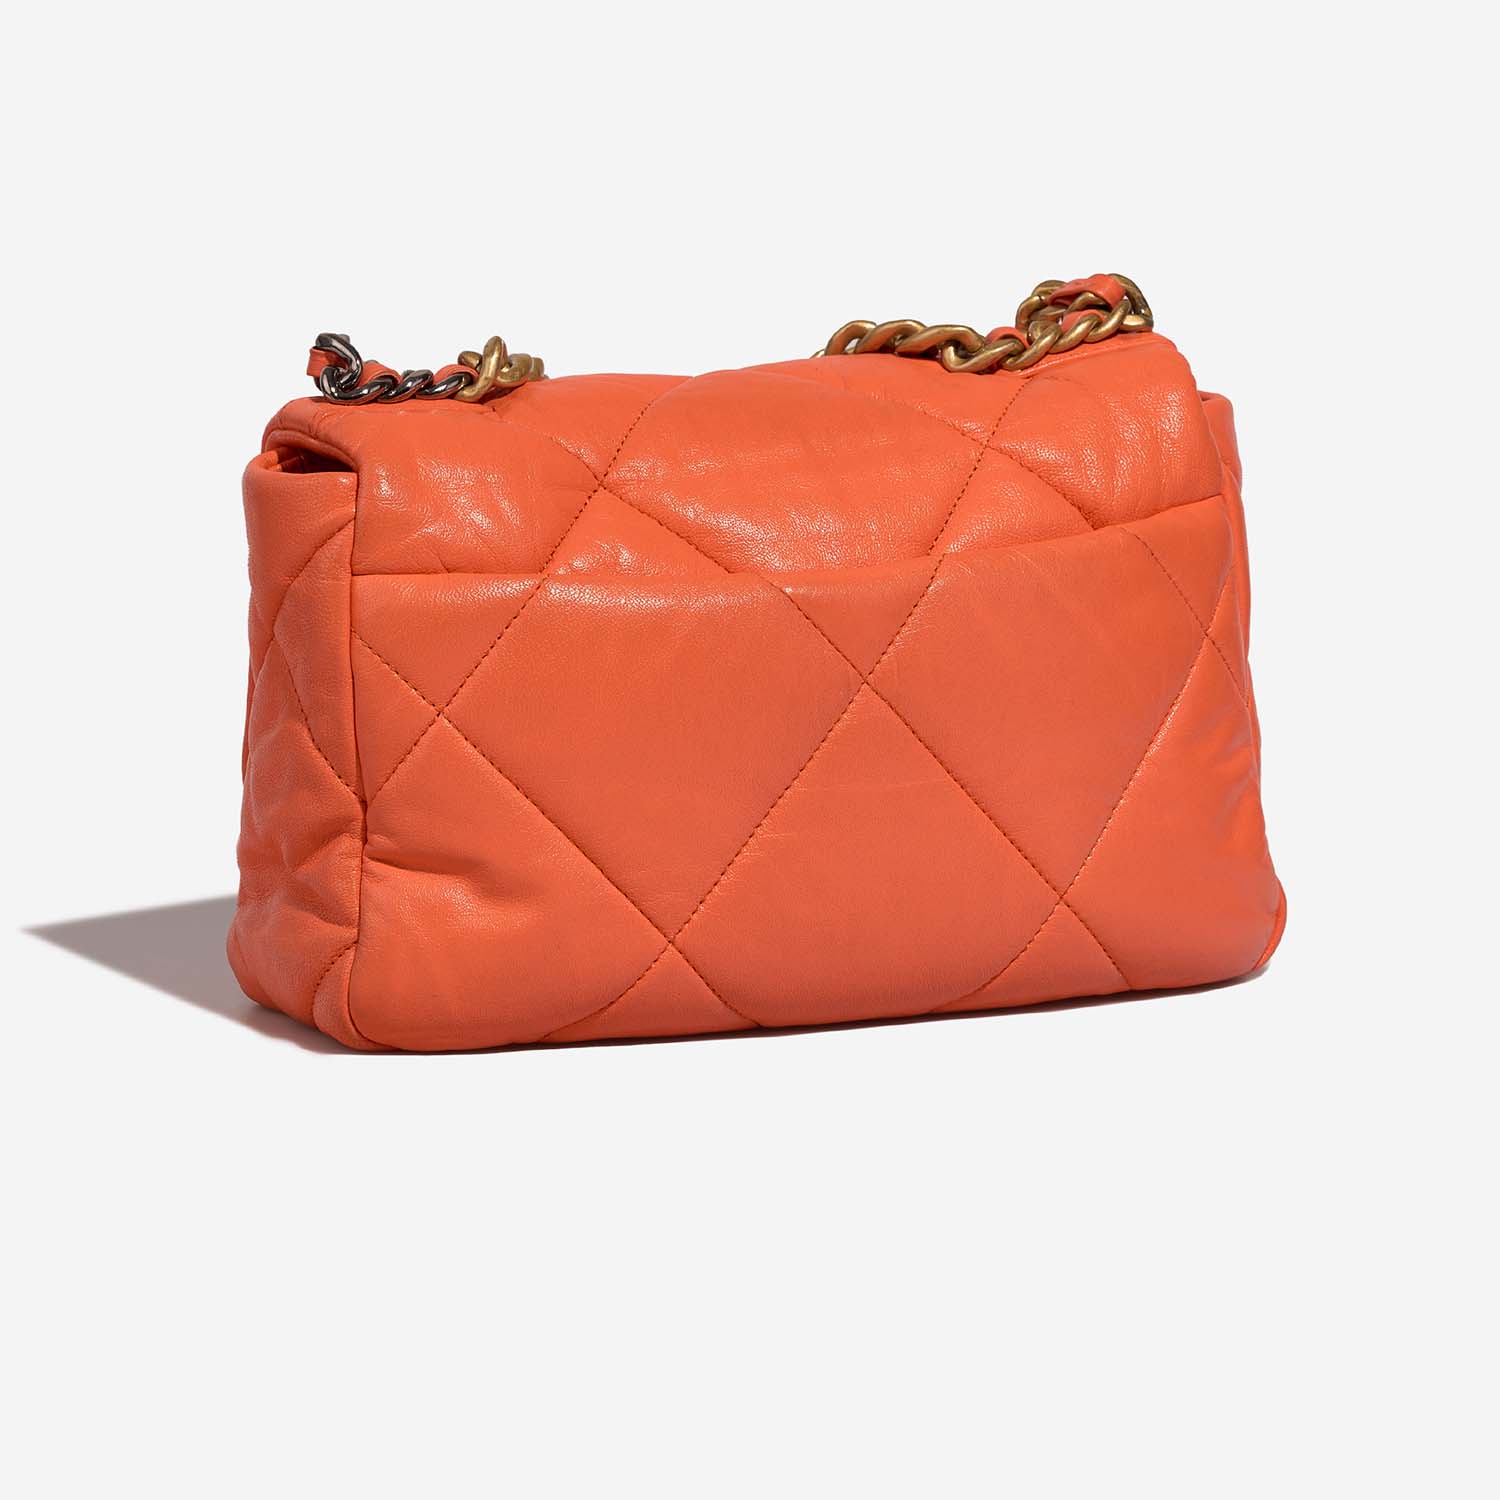 Chanel 19 FlapBag Orange 7SB S | Verkaufen Sie Ihre Designer-Tasche auf Saclab.com